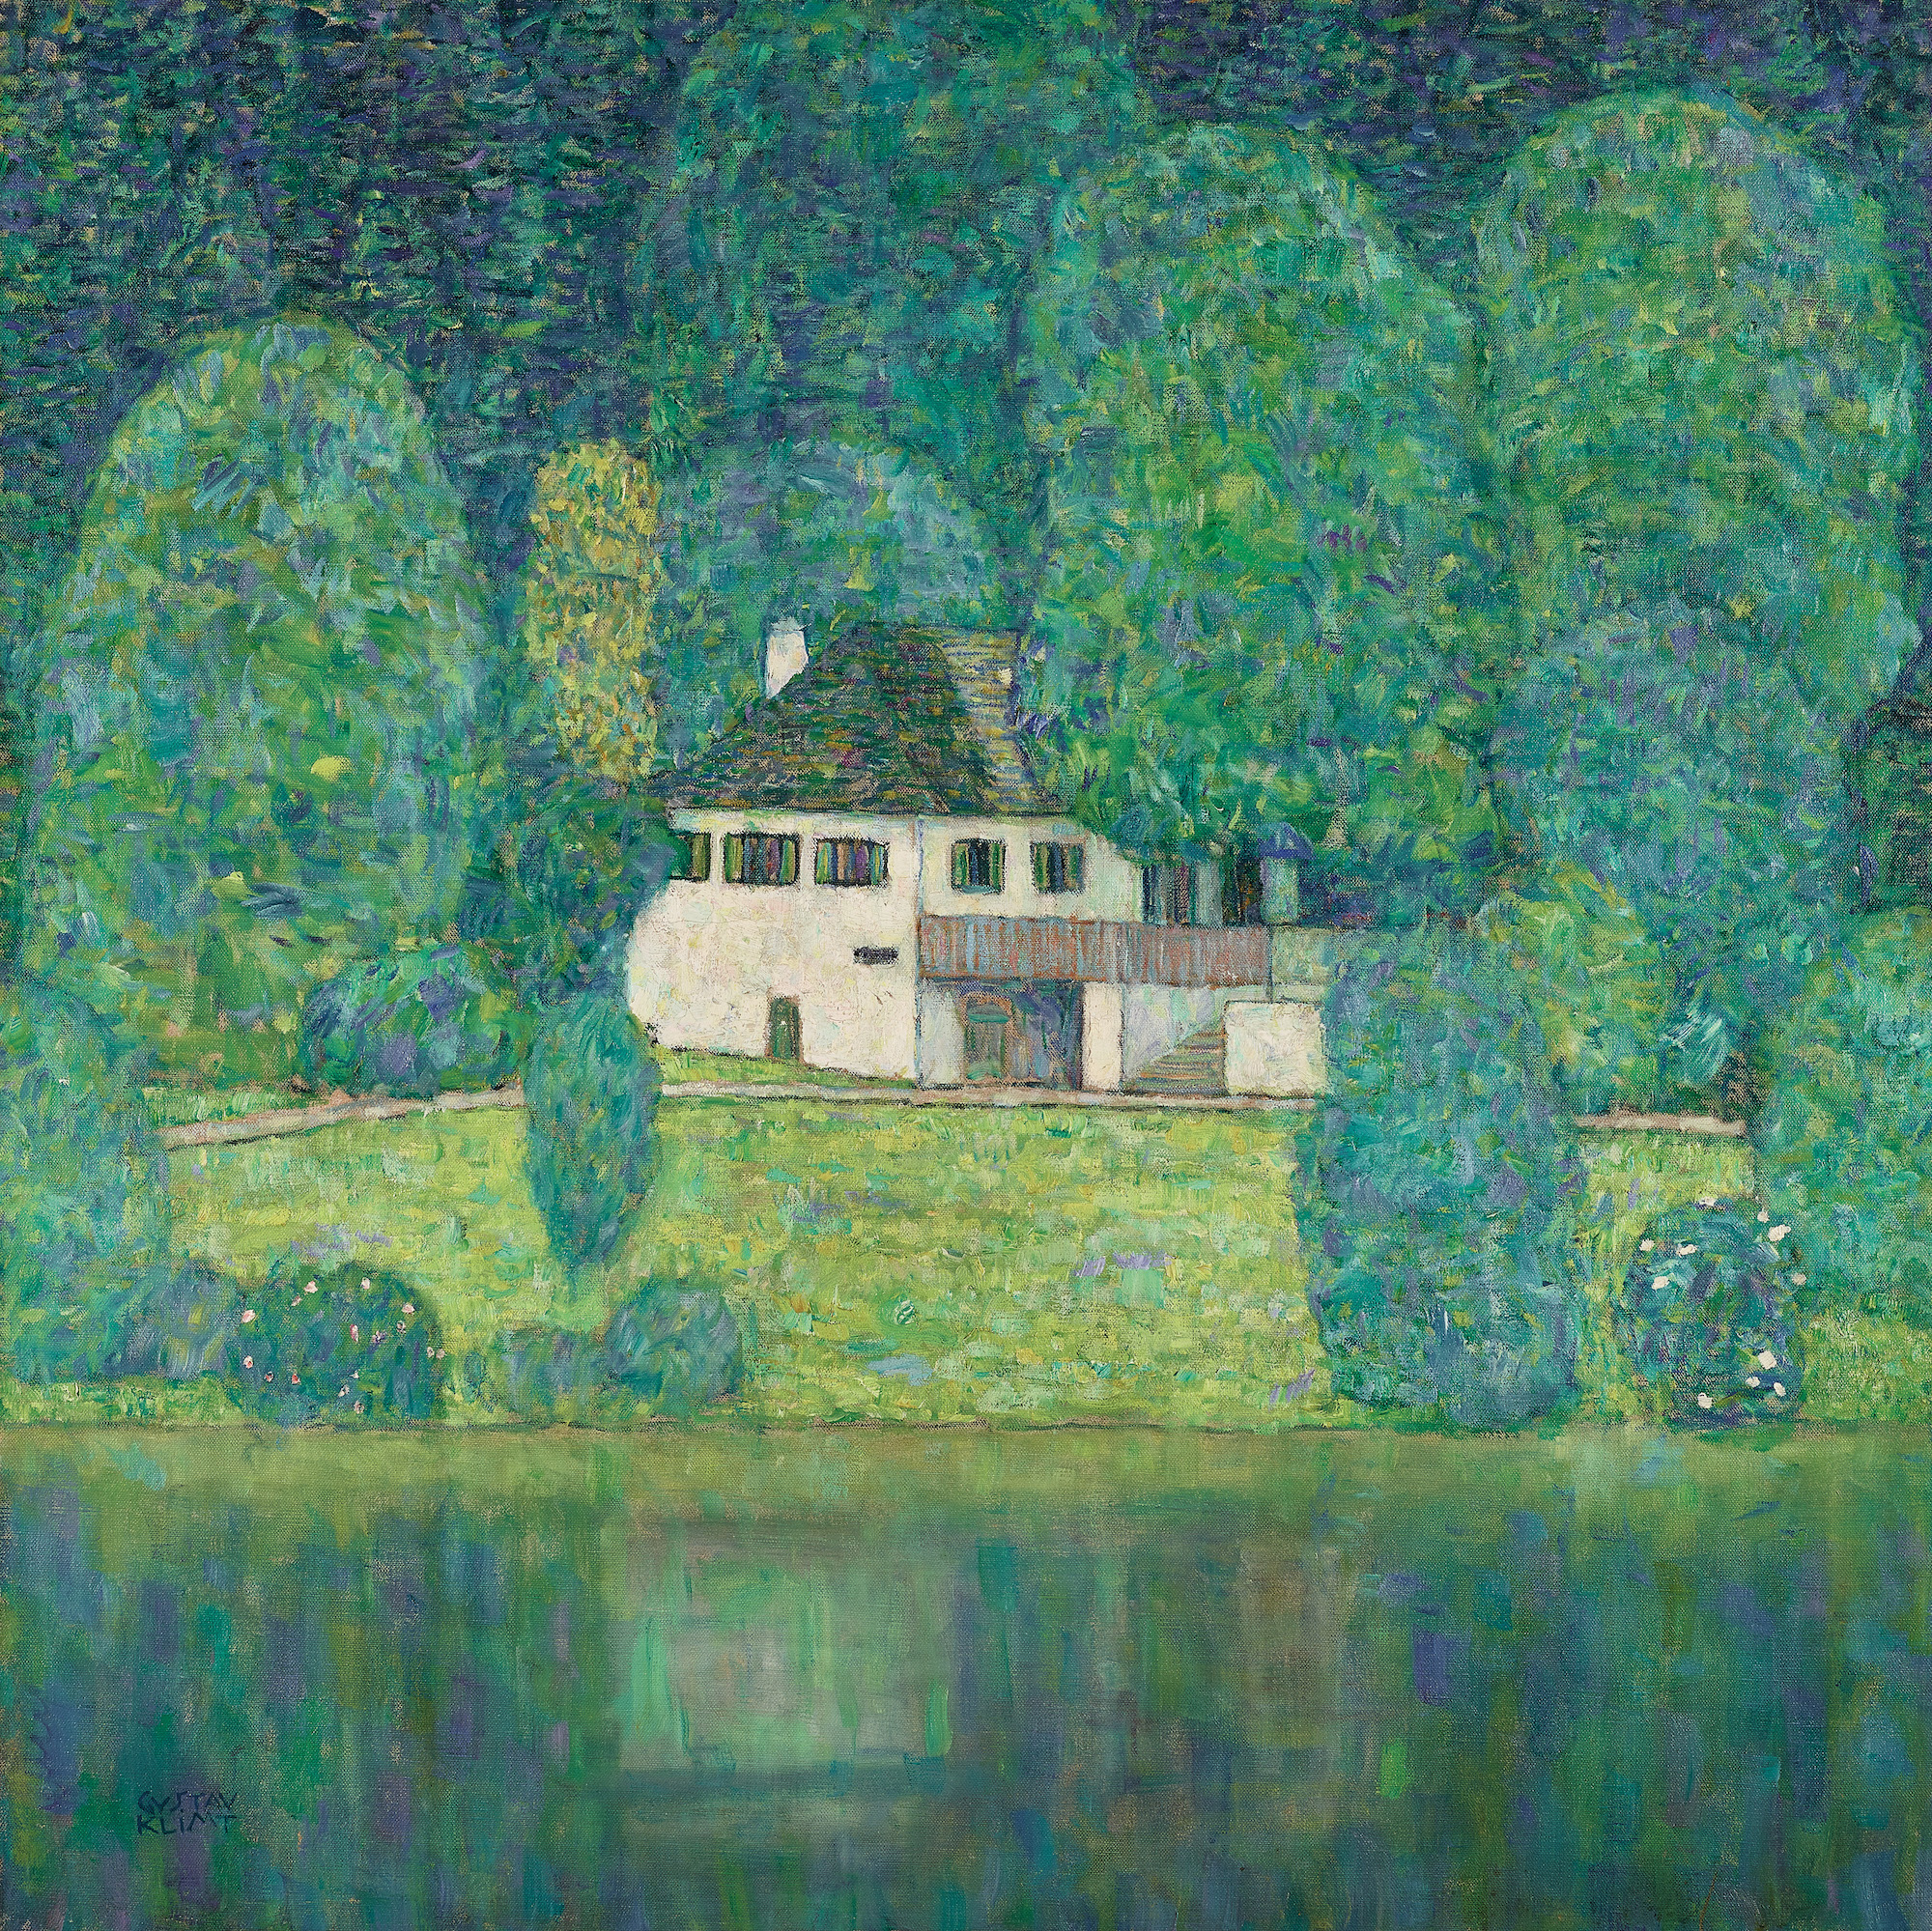 Лицлбергер Келер by Gustav Klimt - 1915/16 